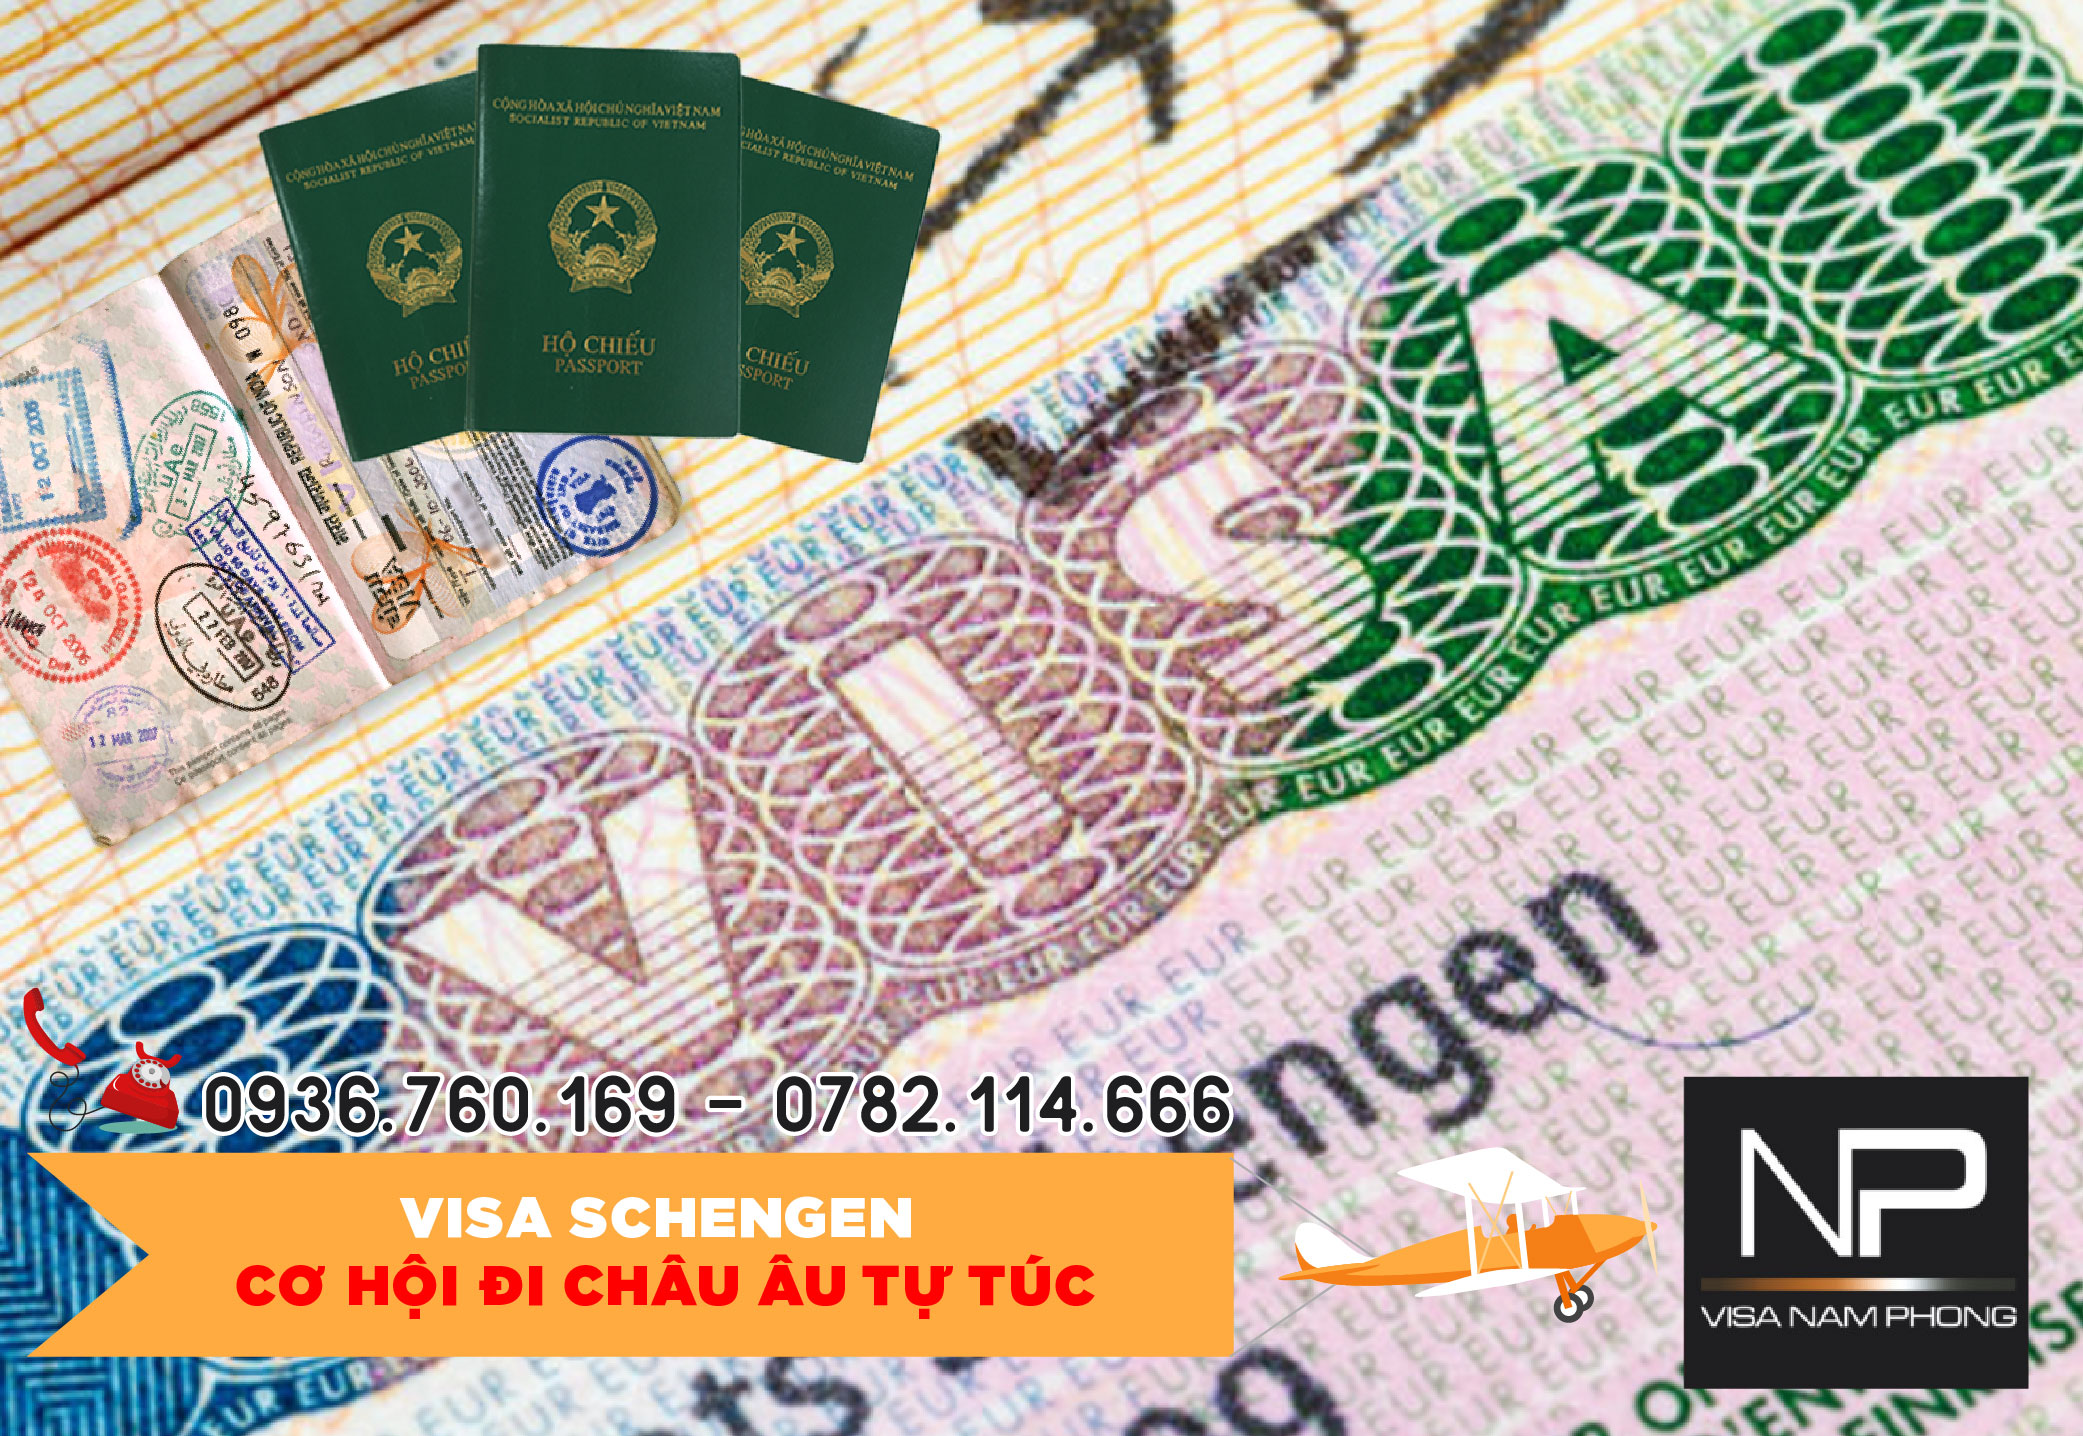 Tư vấn về Visa Schengen tại Hải Phòng